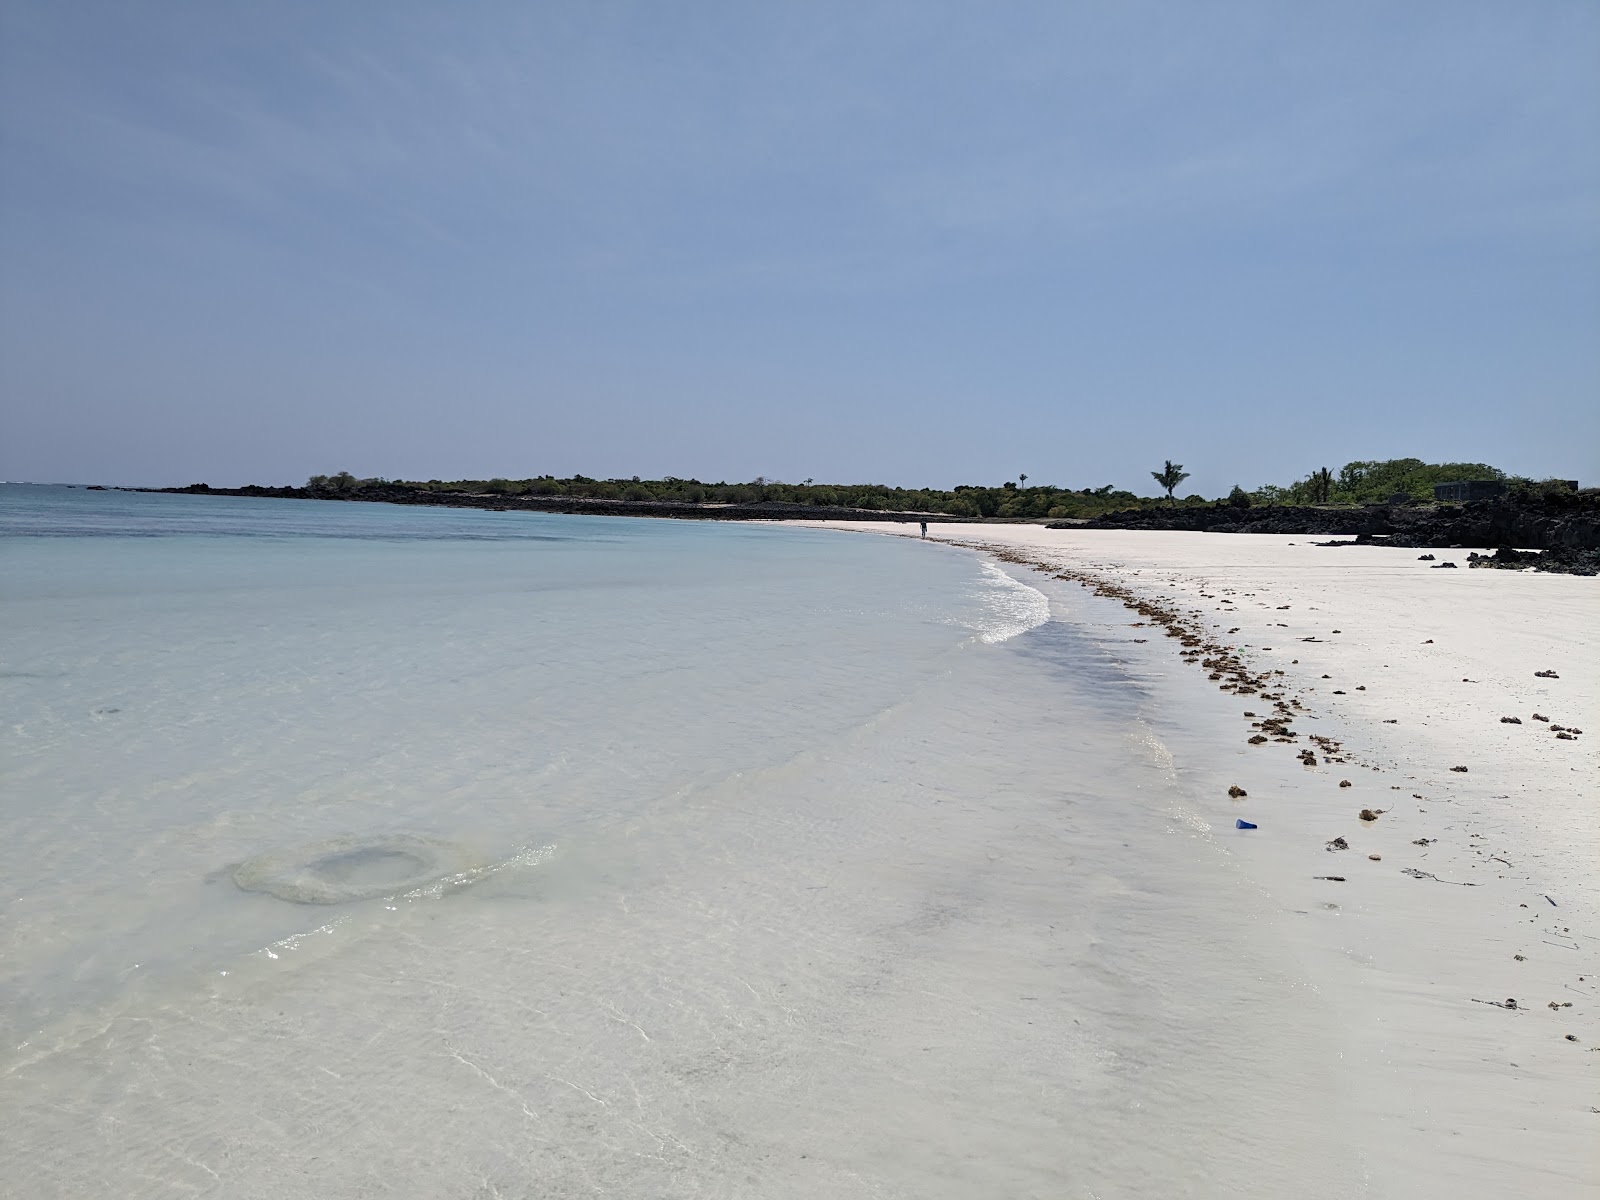 Sada Beach'in fotoğrafı beyaz kum yüzey ile